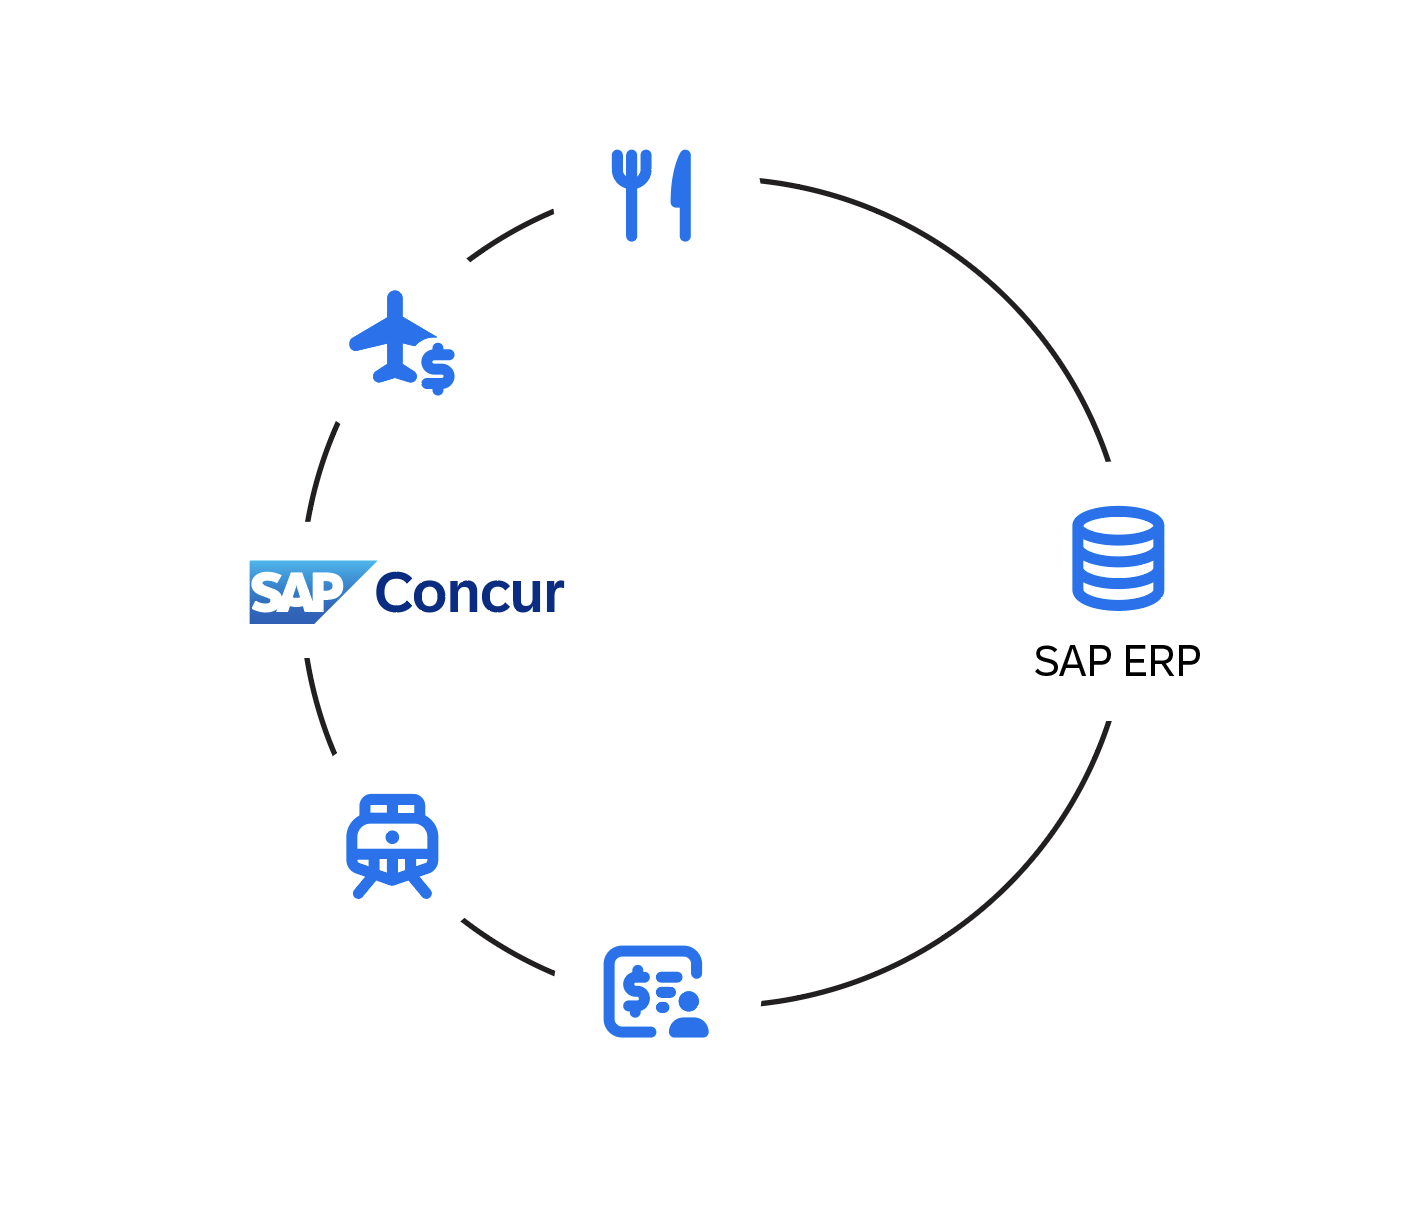 DoorDash for Work - SAP Concur App Center